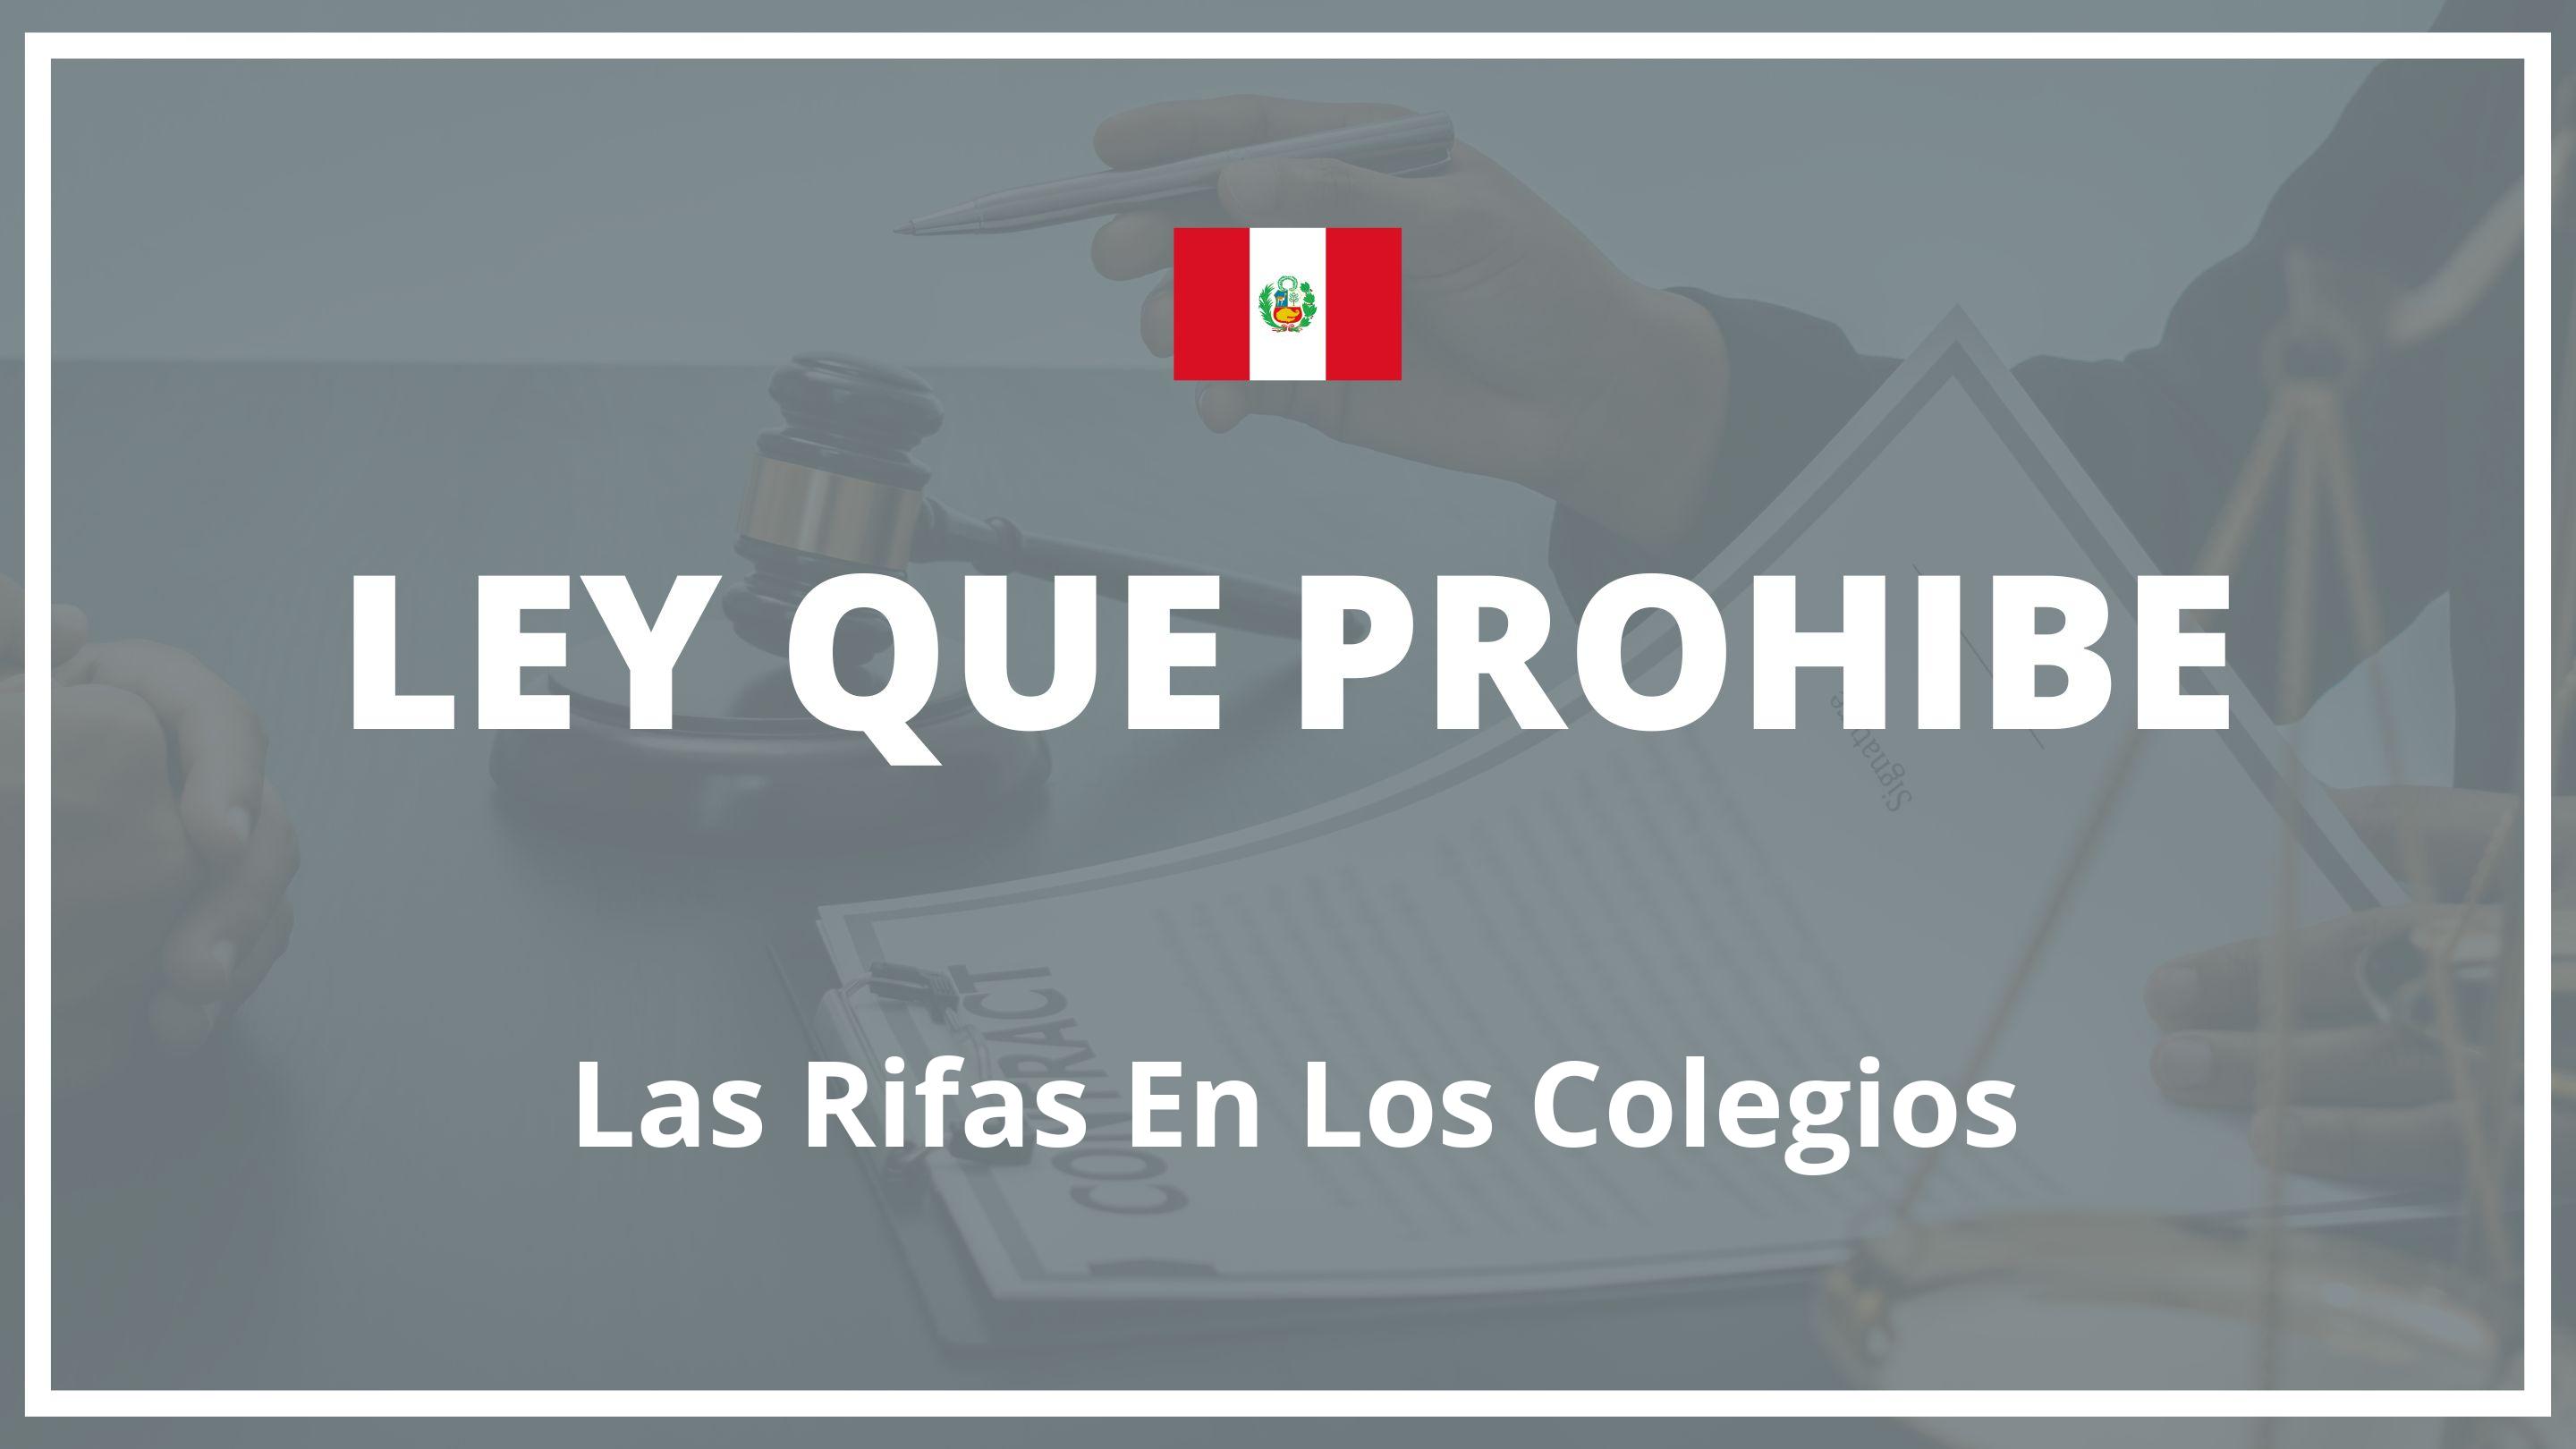 Ley que prohibe las rifas en los colegios Peru